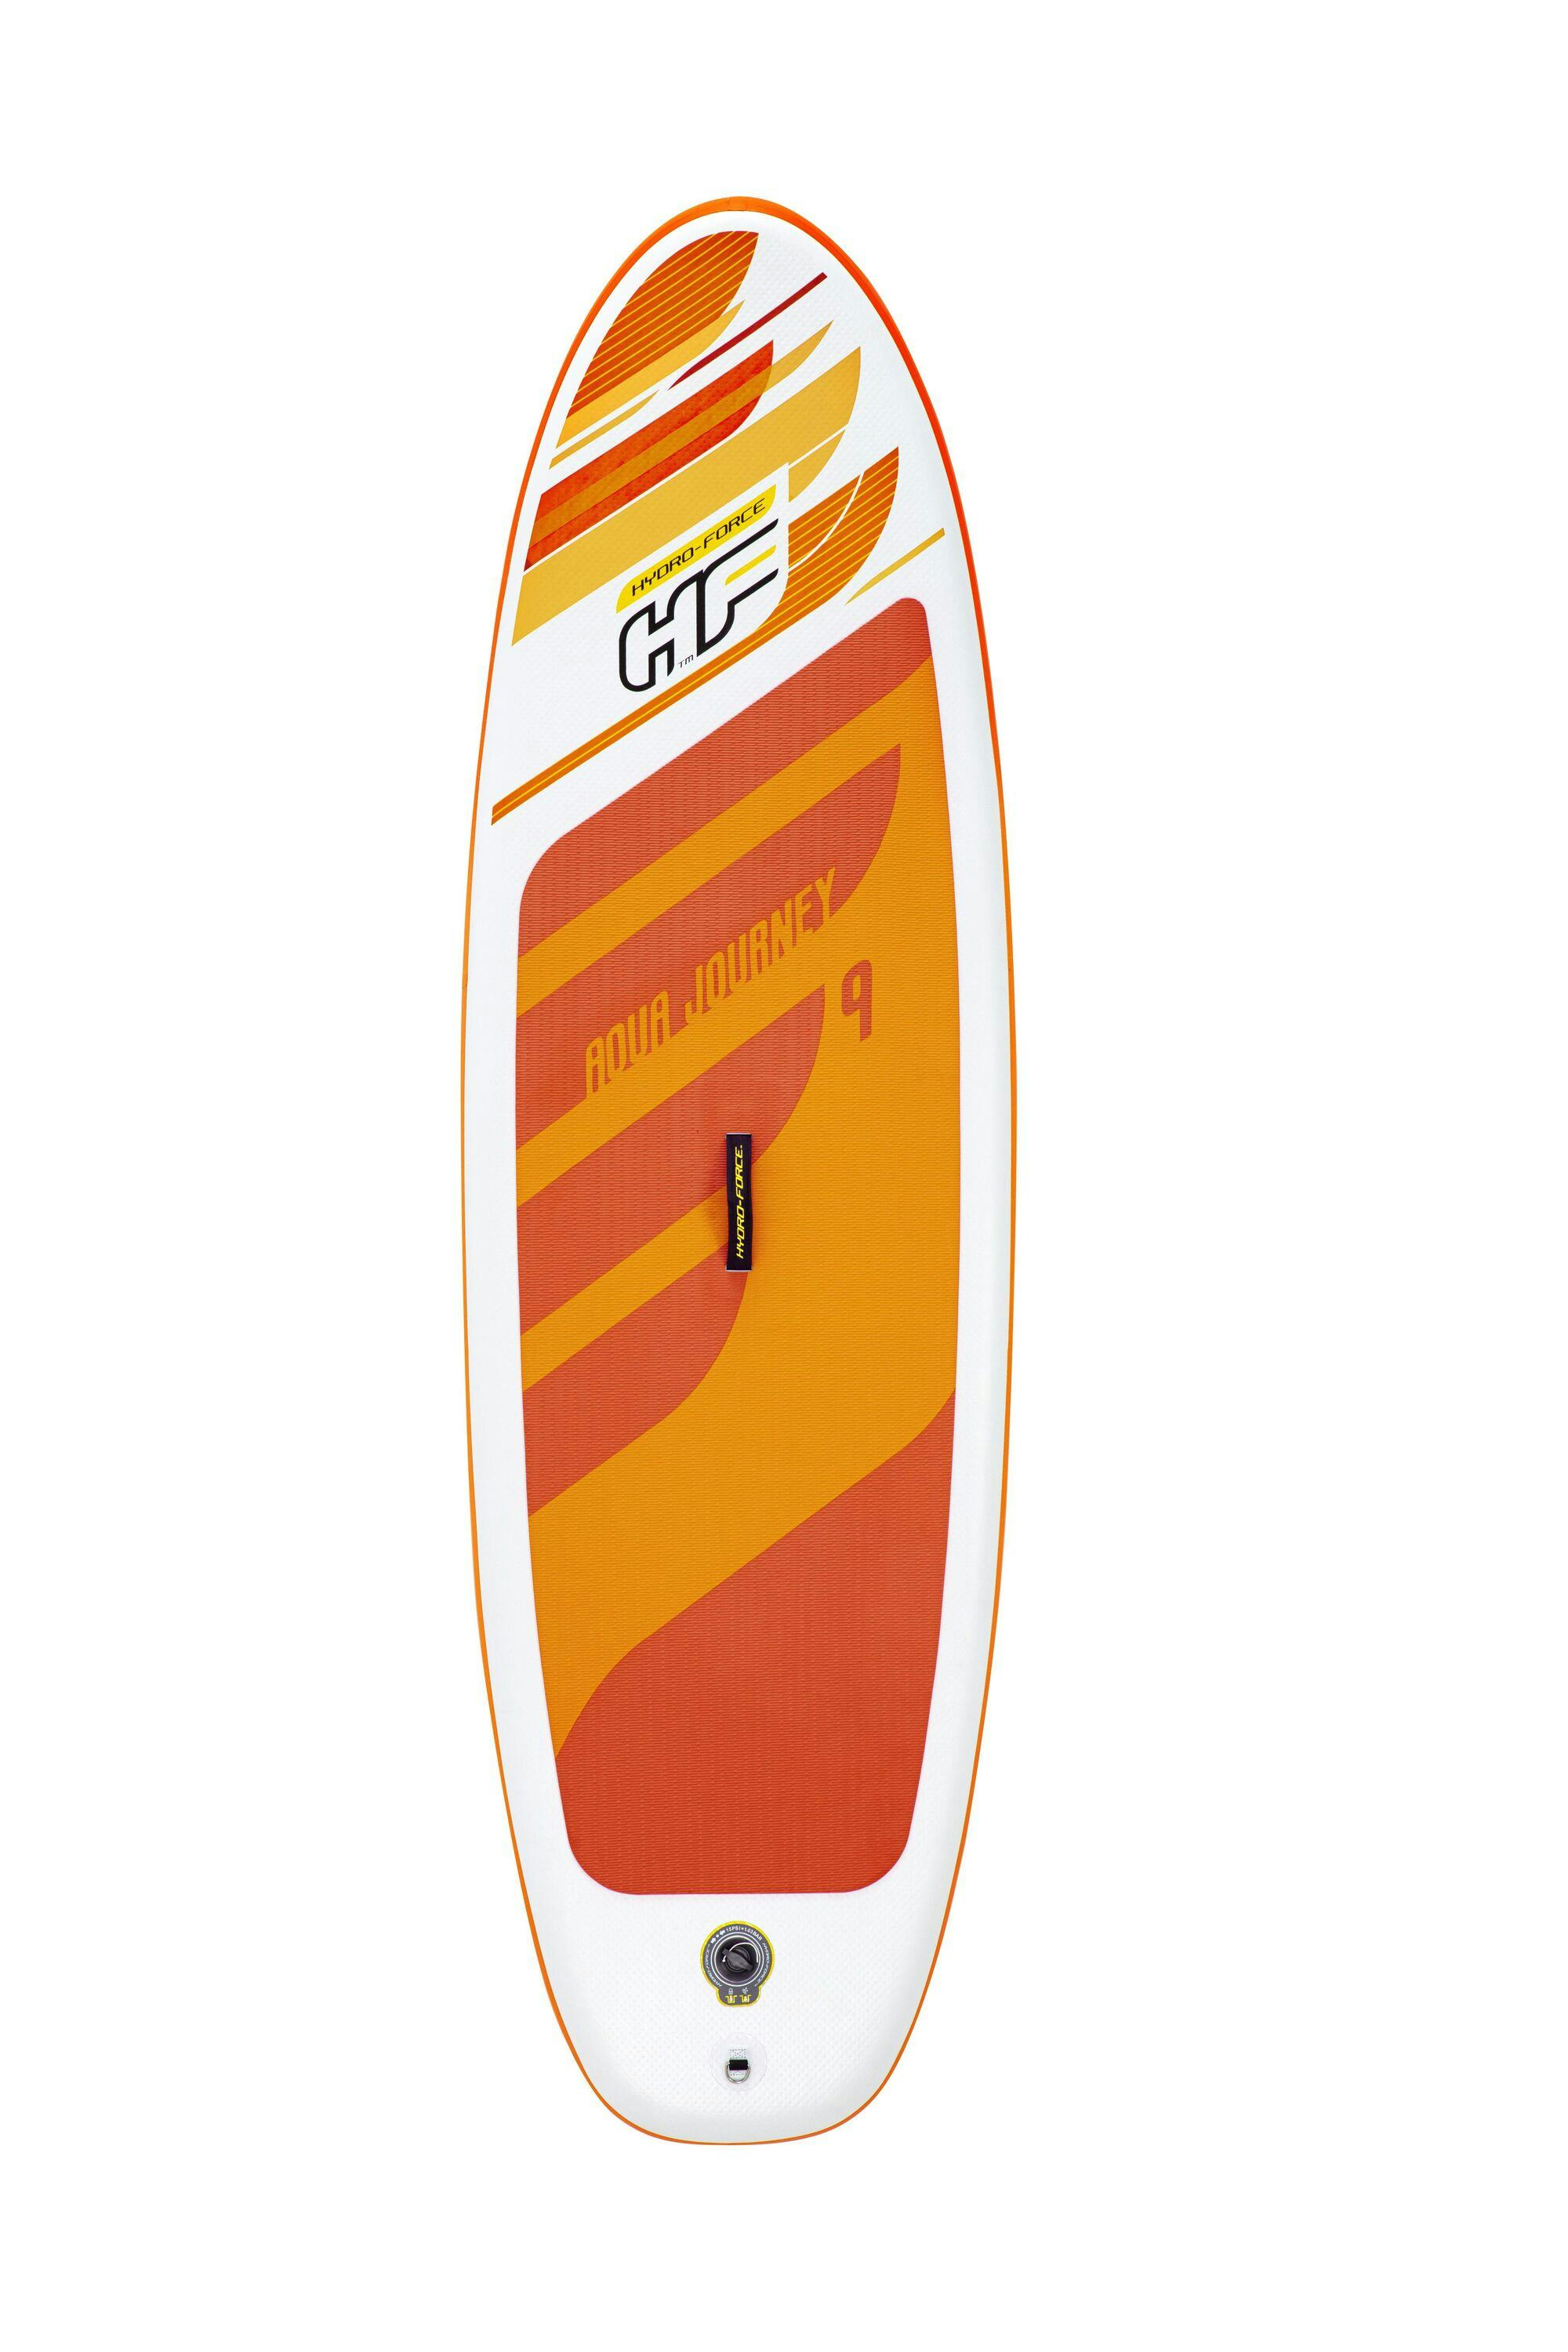 Sports d'eau Paddle SUP gonflable Hydro-Force™ Aqua Journey 274 x 76 x 12 cm, pompe, pagaie, leash, sac à dos de transport Bestway 3